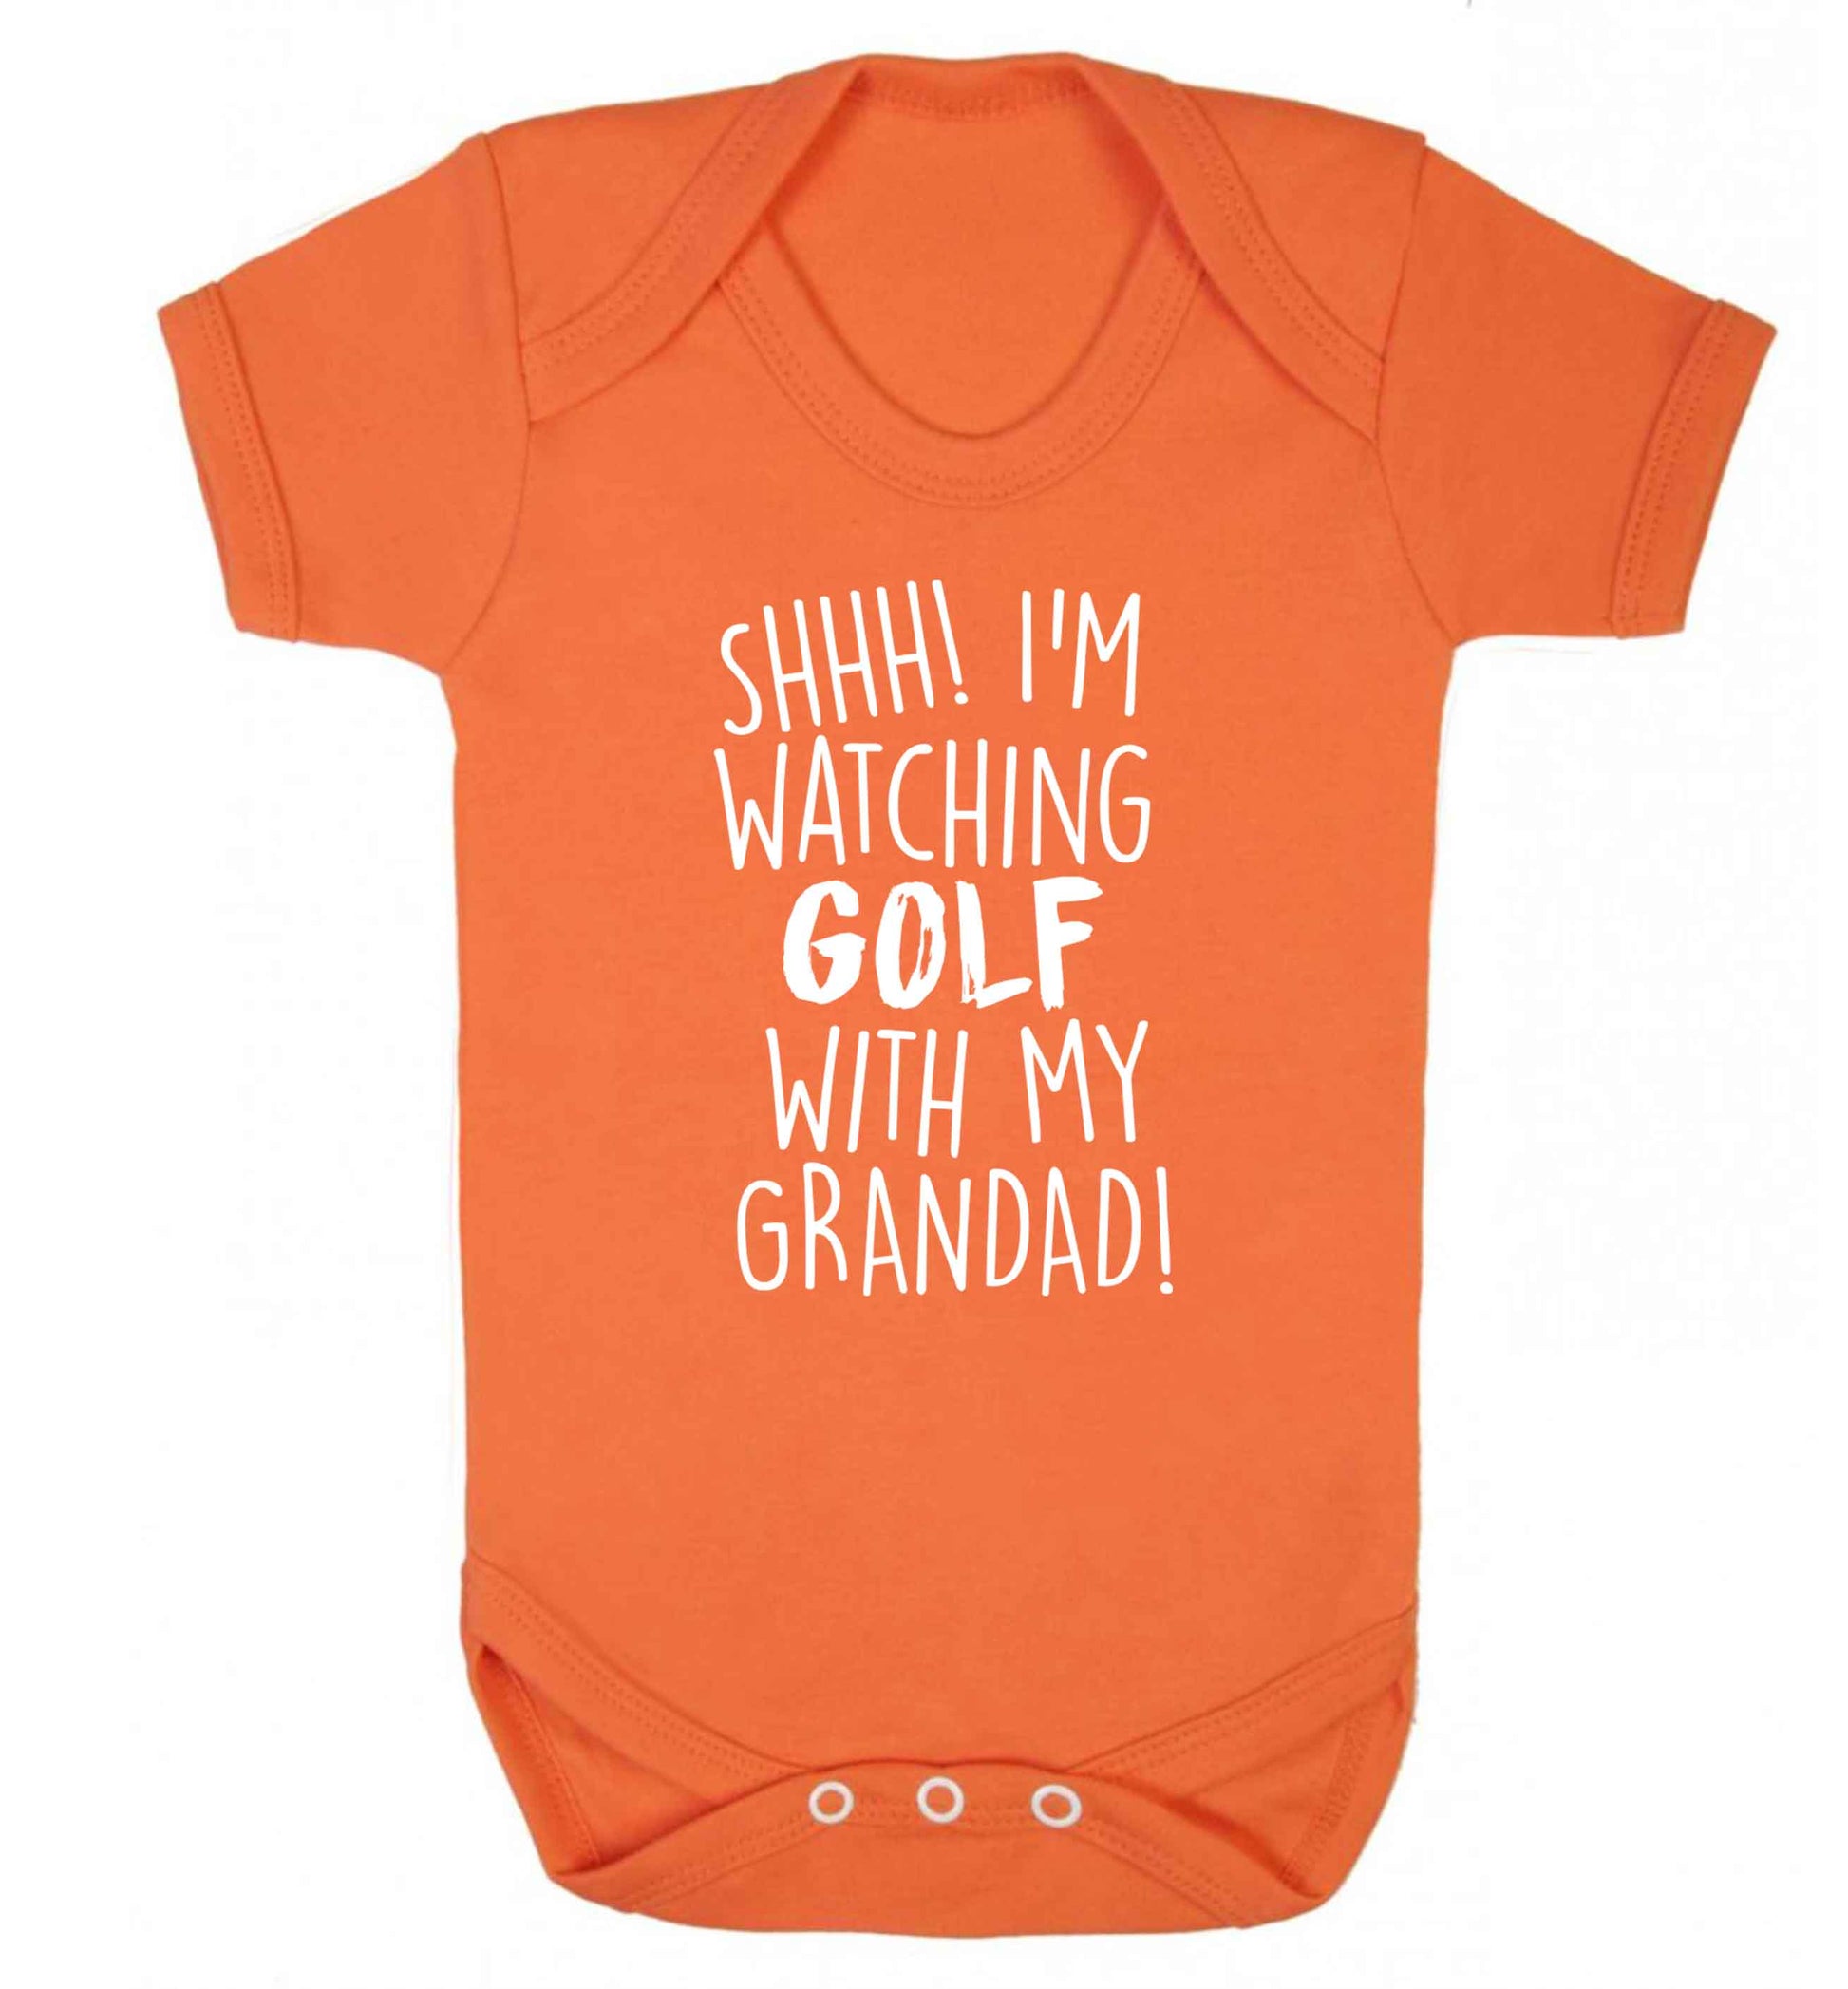 Shh I'm watching golf with my grandad Baby Vest orange 18-24 months